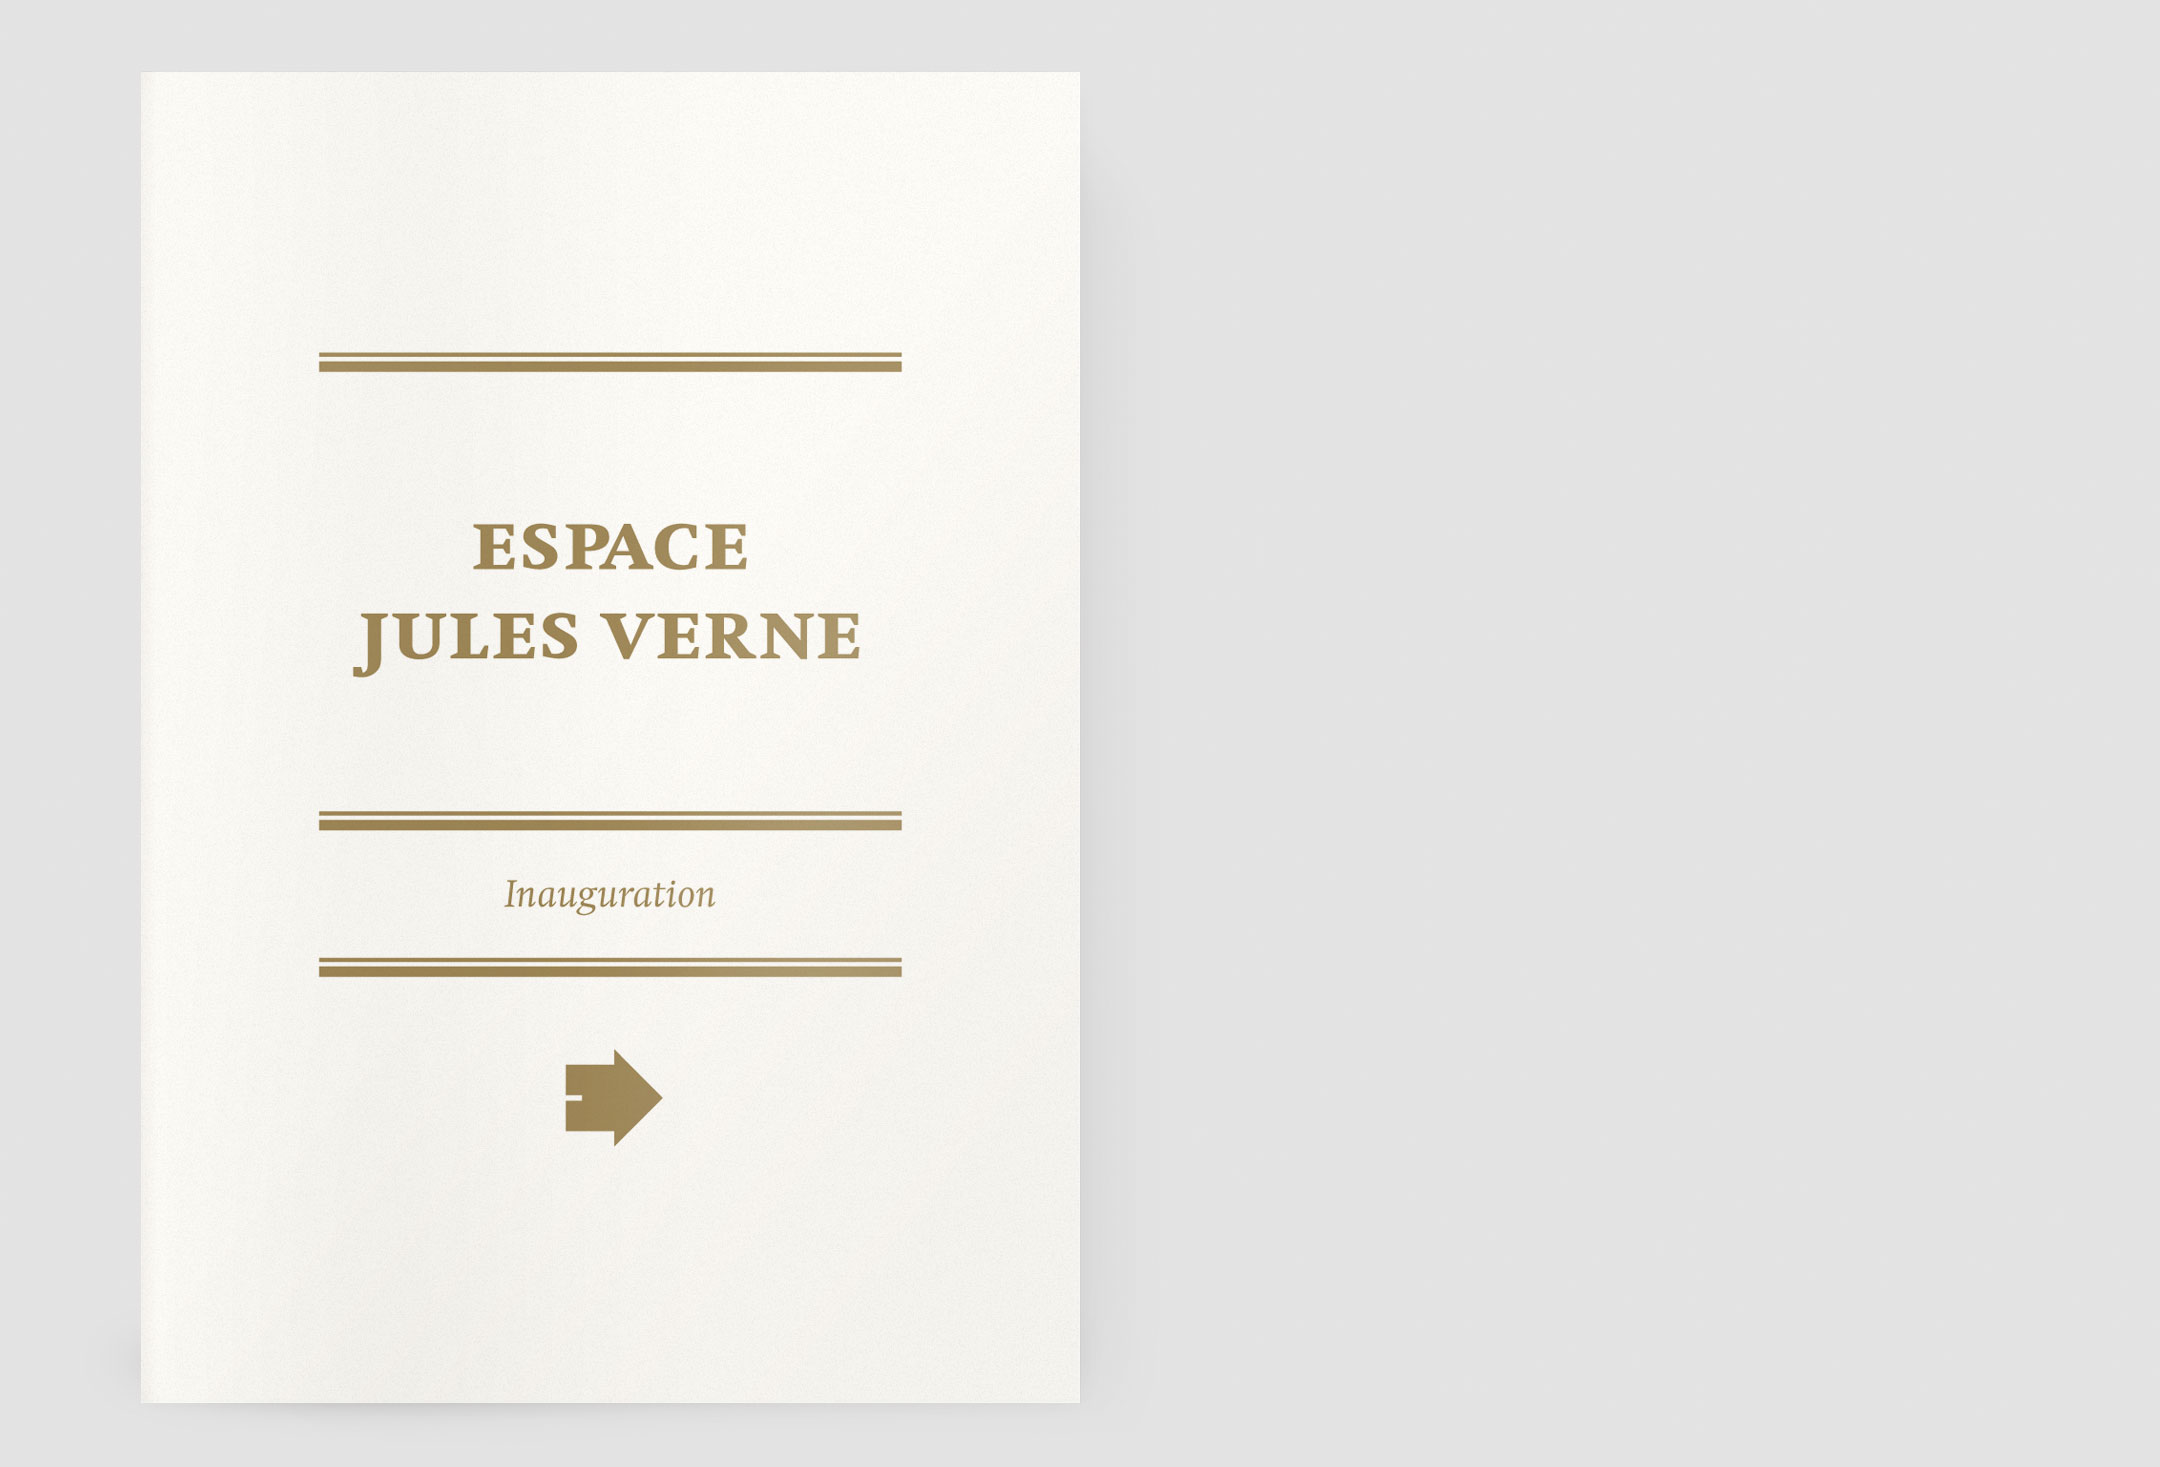 Espace Jules Verne